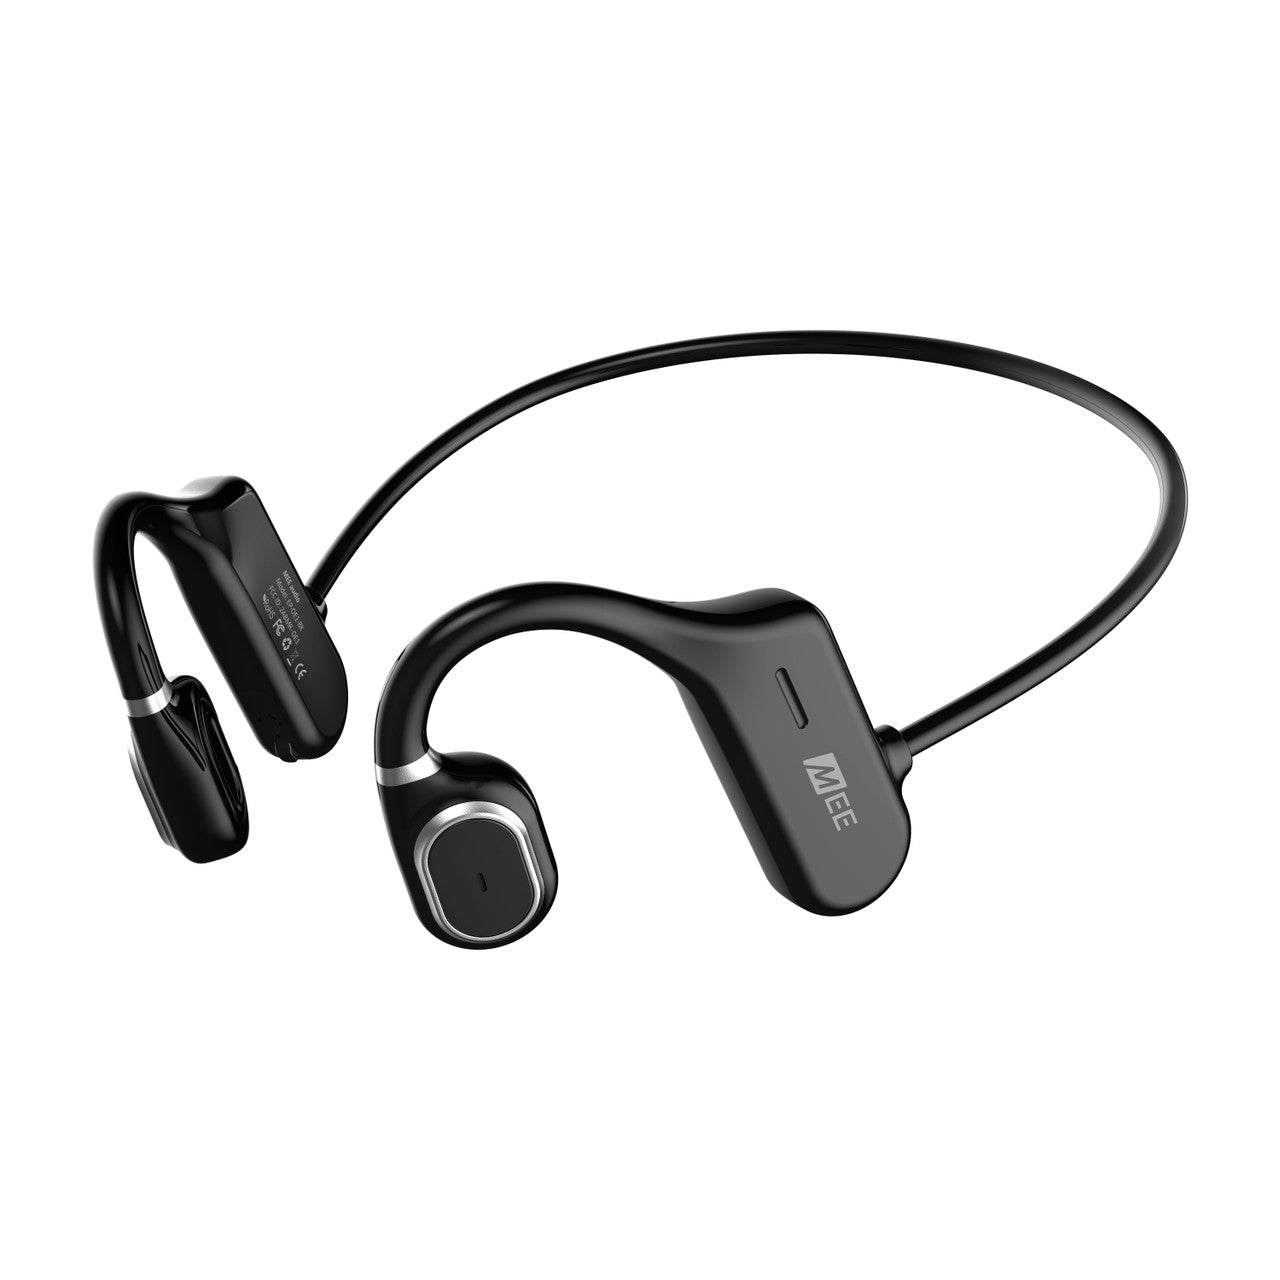 Image of AirHooks Open Ear Wireless Sports Headphones.